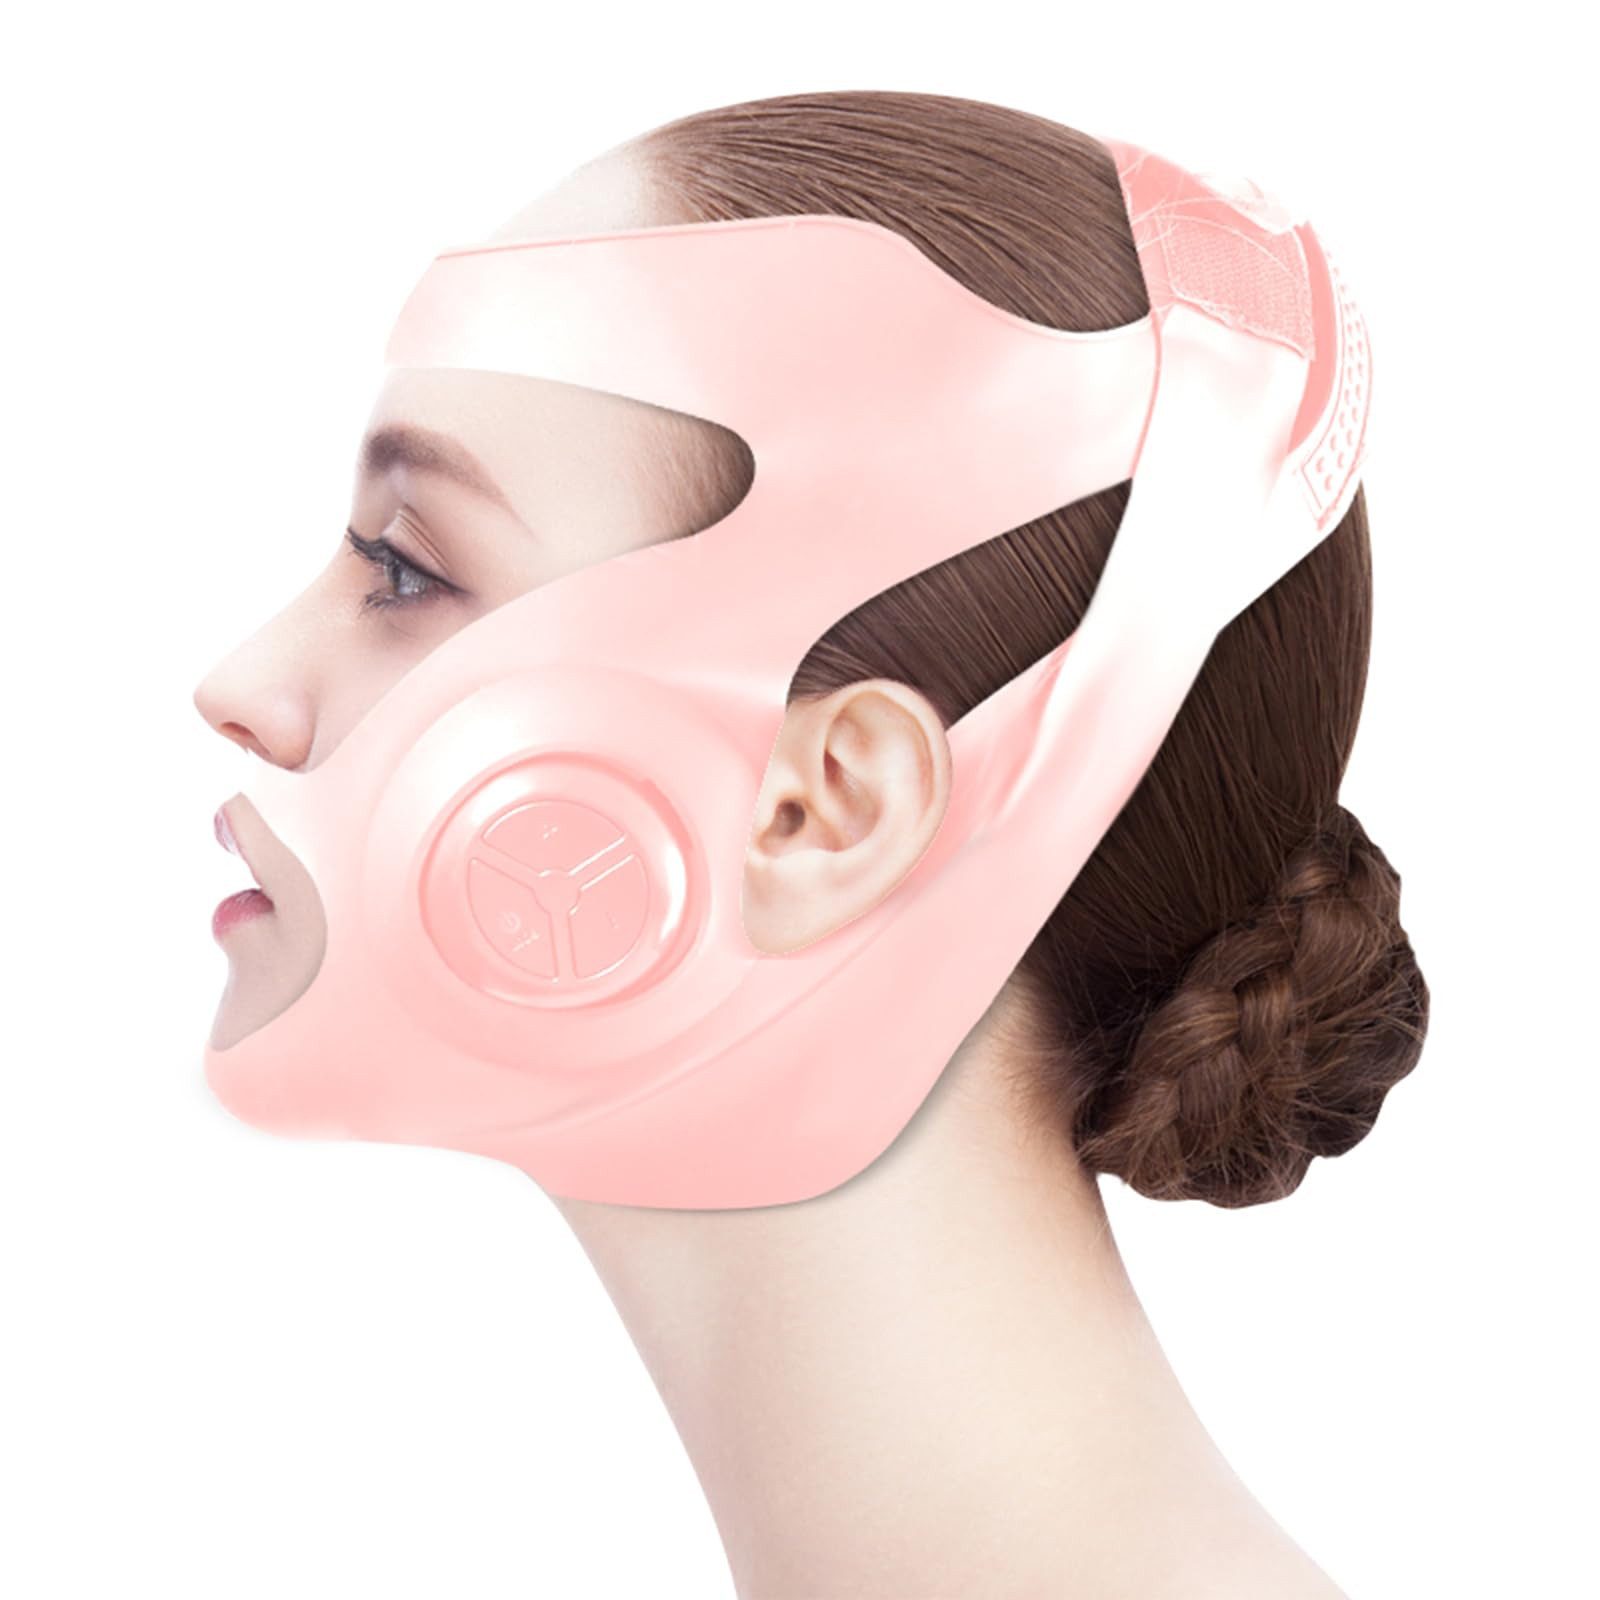 Jioson Dermaroller Microcurrent Firming & Lifting 5-stufig regelbar Waschbar, Gesichtsmassage- & Hautpflege-Set: Anti-Aging für strahlende Haut, waschbares Design: Ausgestattet mit Luftgummibandage, Mikrostrom-Massage 3D-Gesichtsdesign Magnetmassage-Technologie